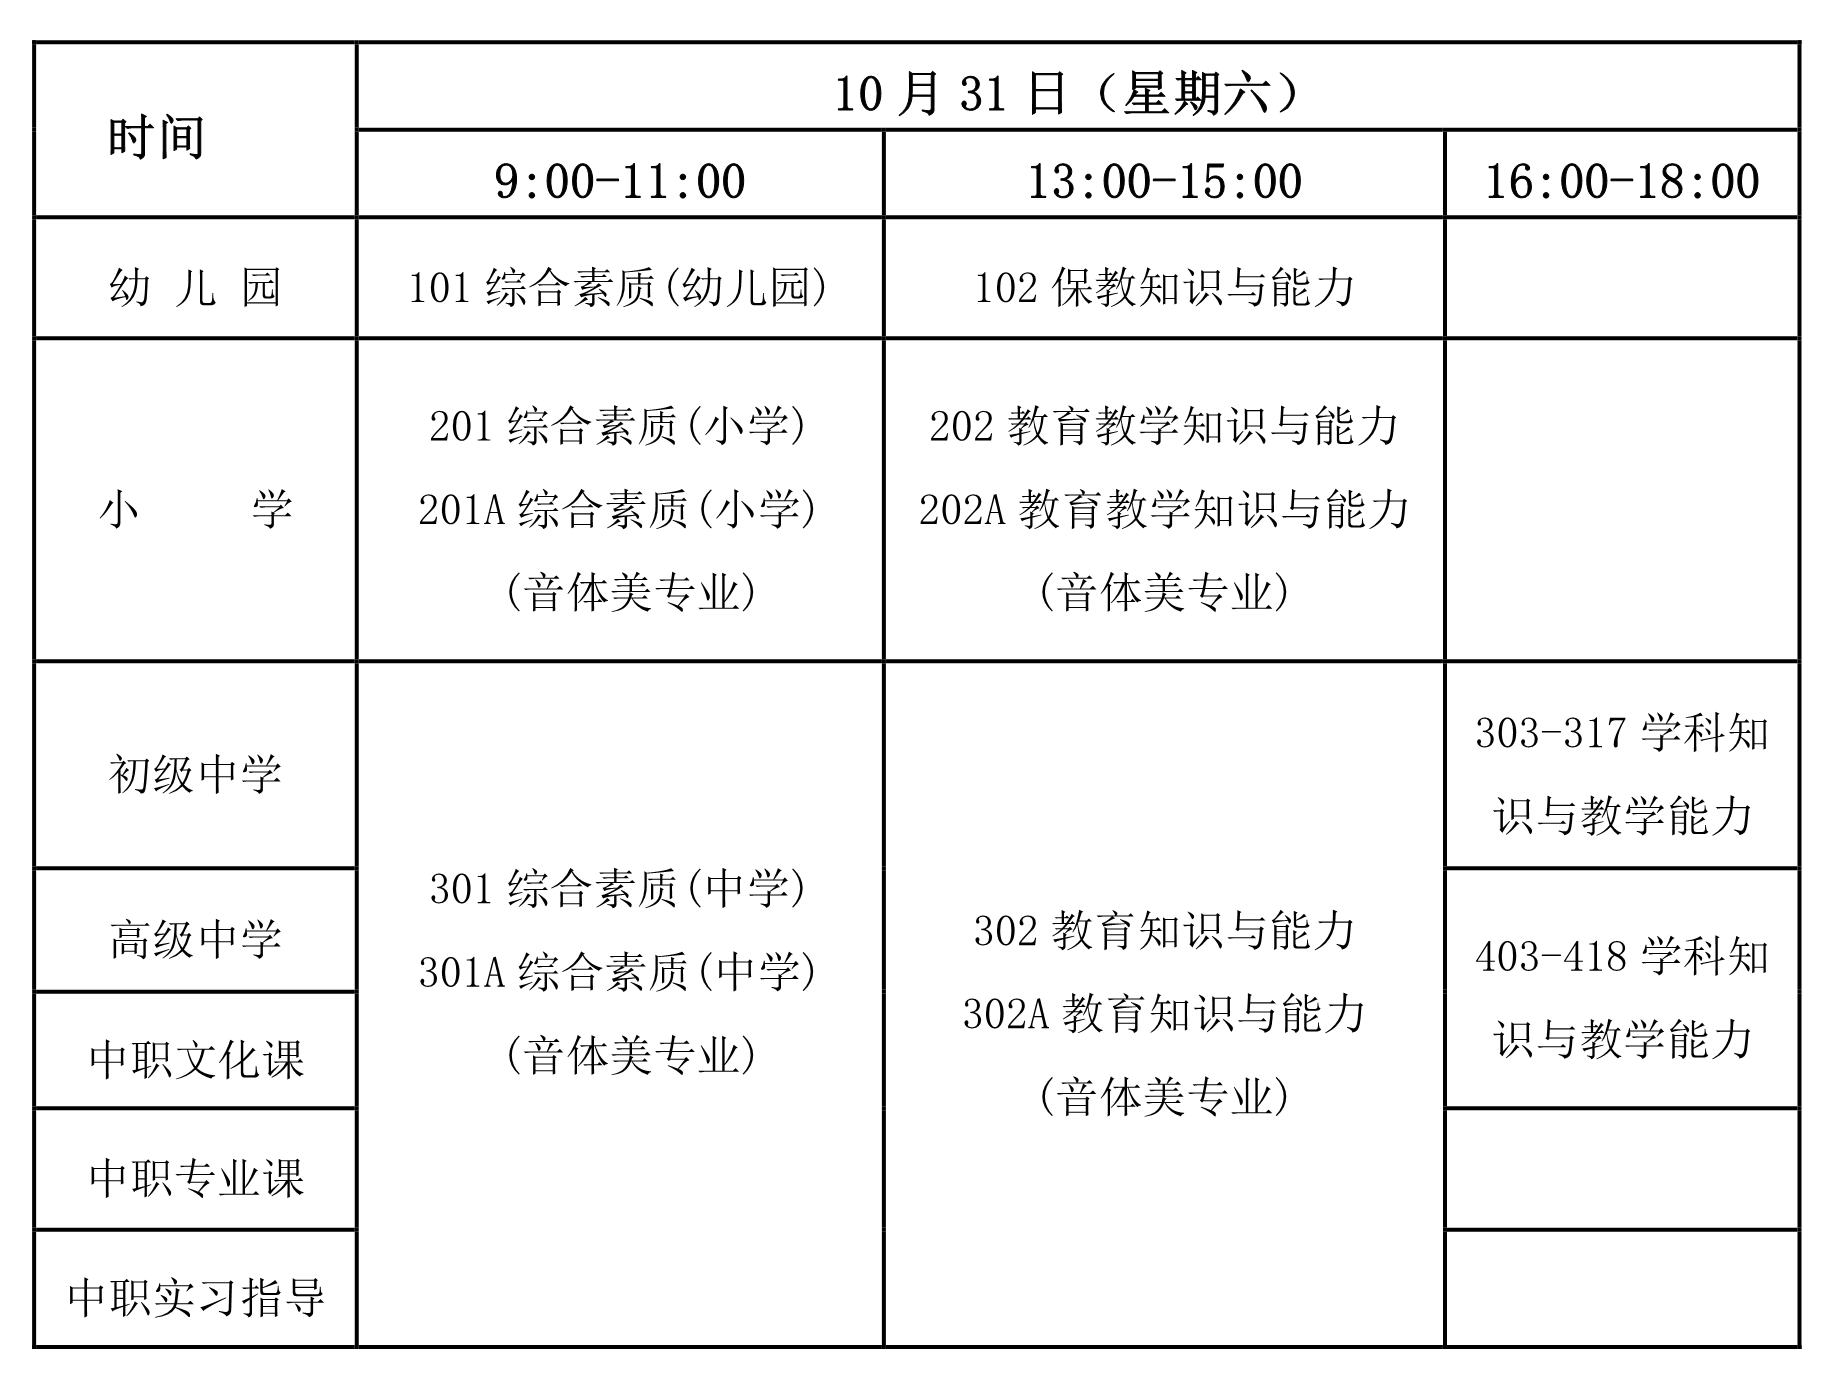 2020年海南省中小学教师资格证考试通知